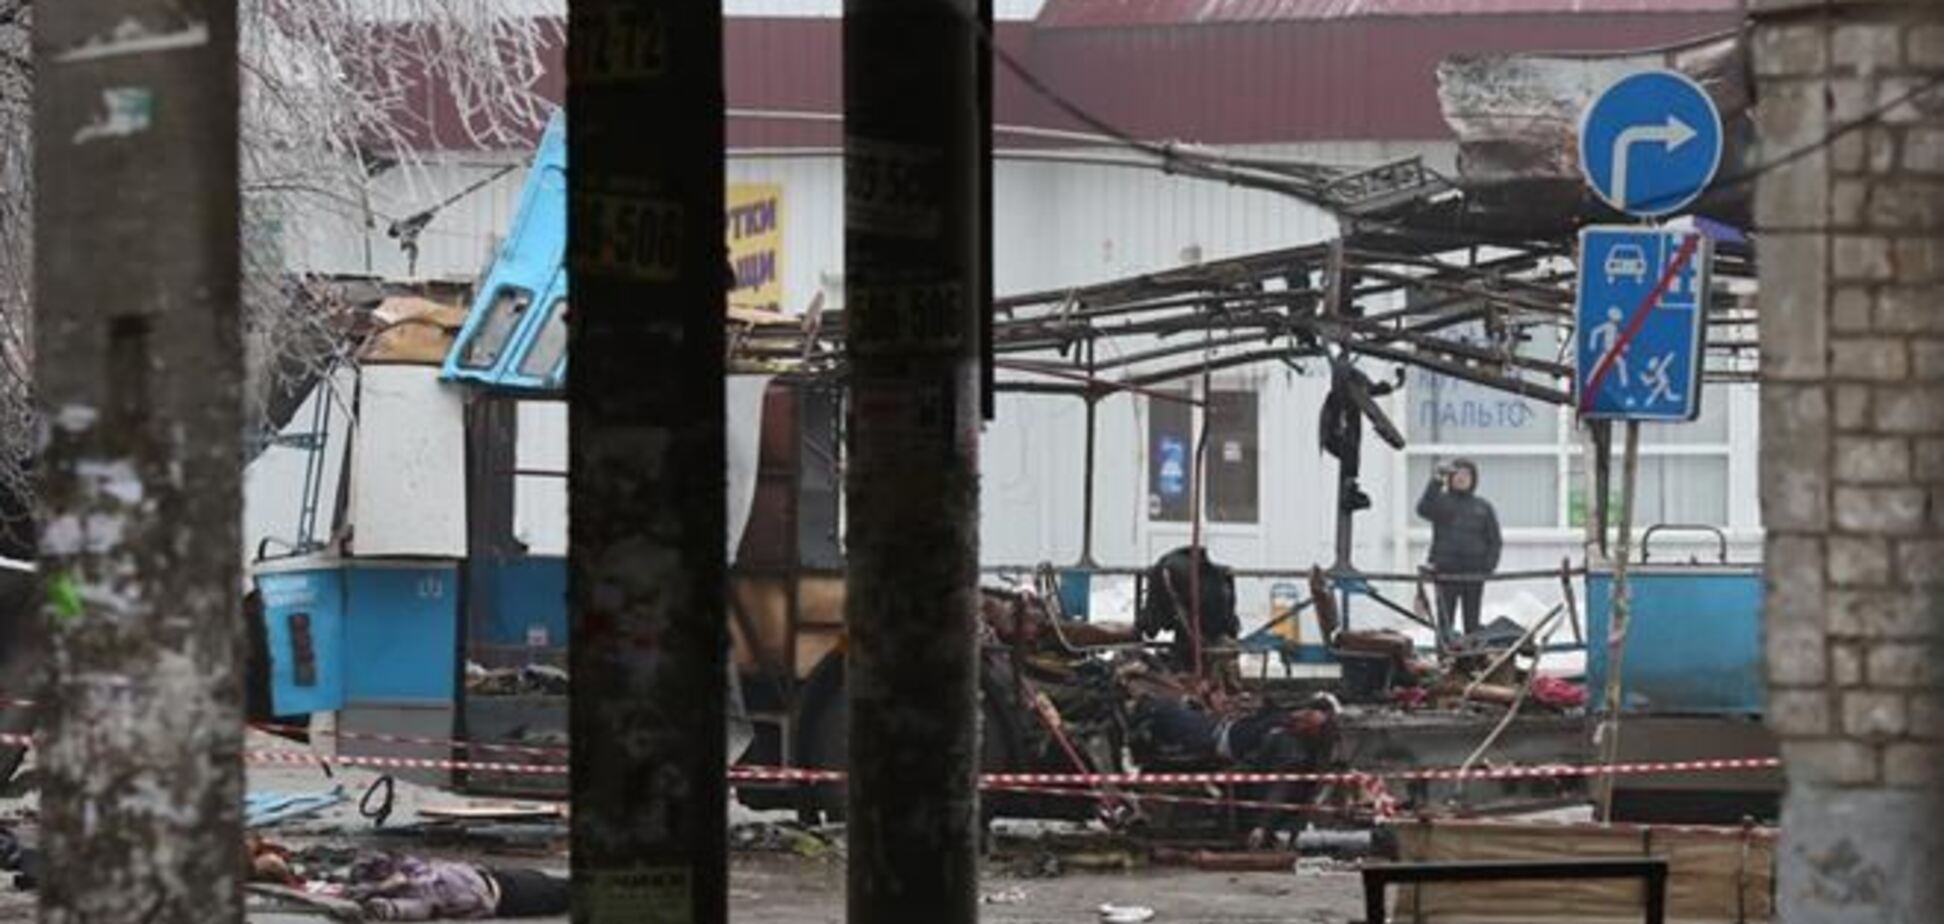 Официальные источники сообщают о разном количестве жертв теракта в Волгограде